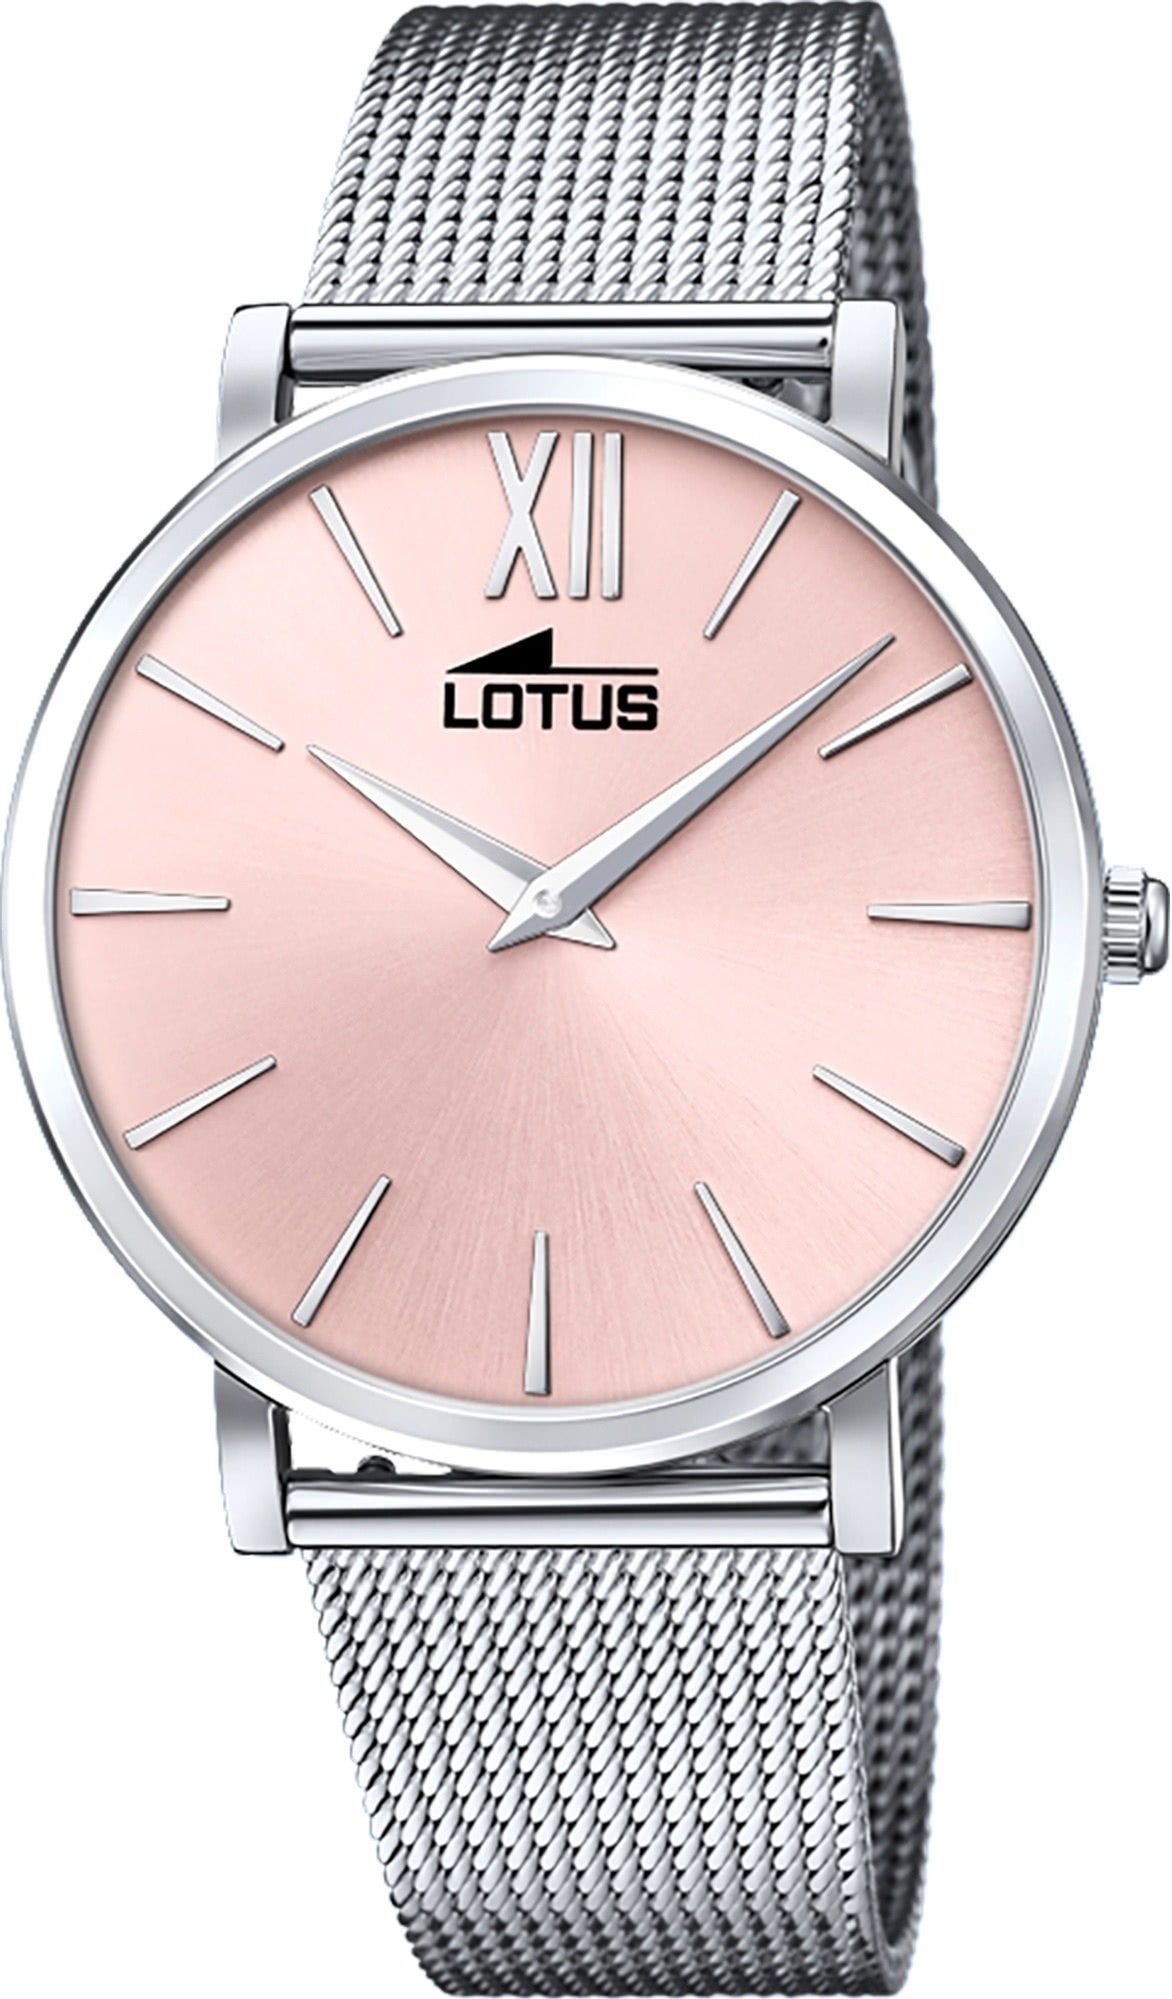 Lotus Quarzuhr Lotus Damen Armbanduhr Smart Casual, Damenuhr rund, mittel (ca. 38mm) Edelstahlarmband silber | Quarzuhren